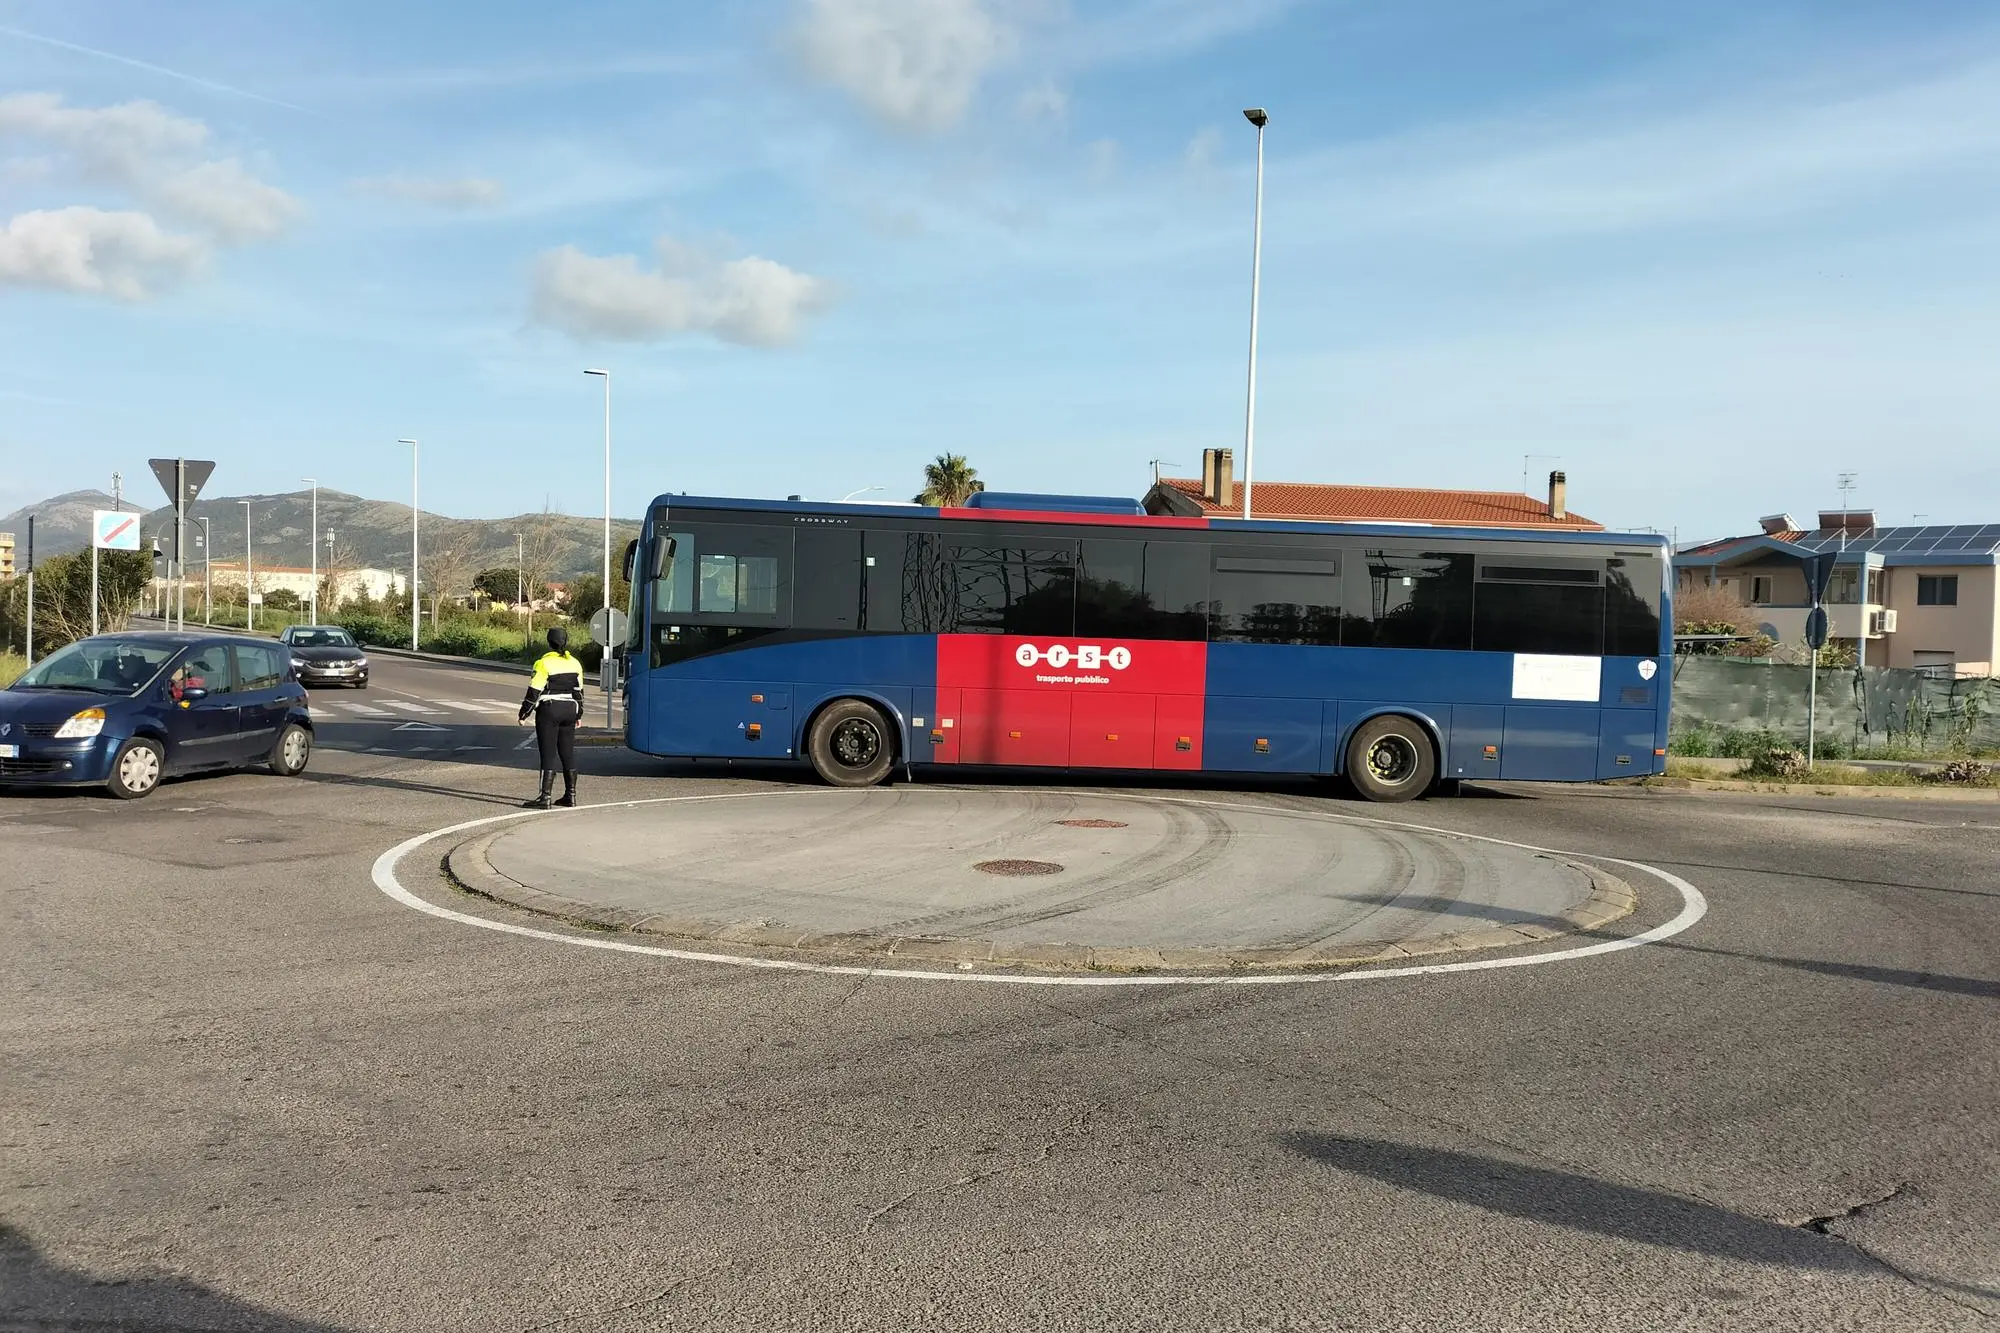 L'autobus in panne in via Lai (Foto Andrea Scano)